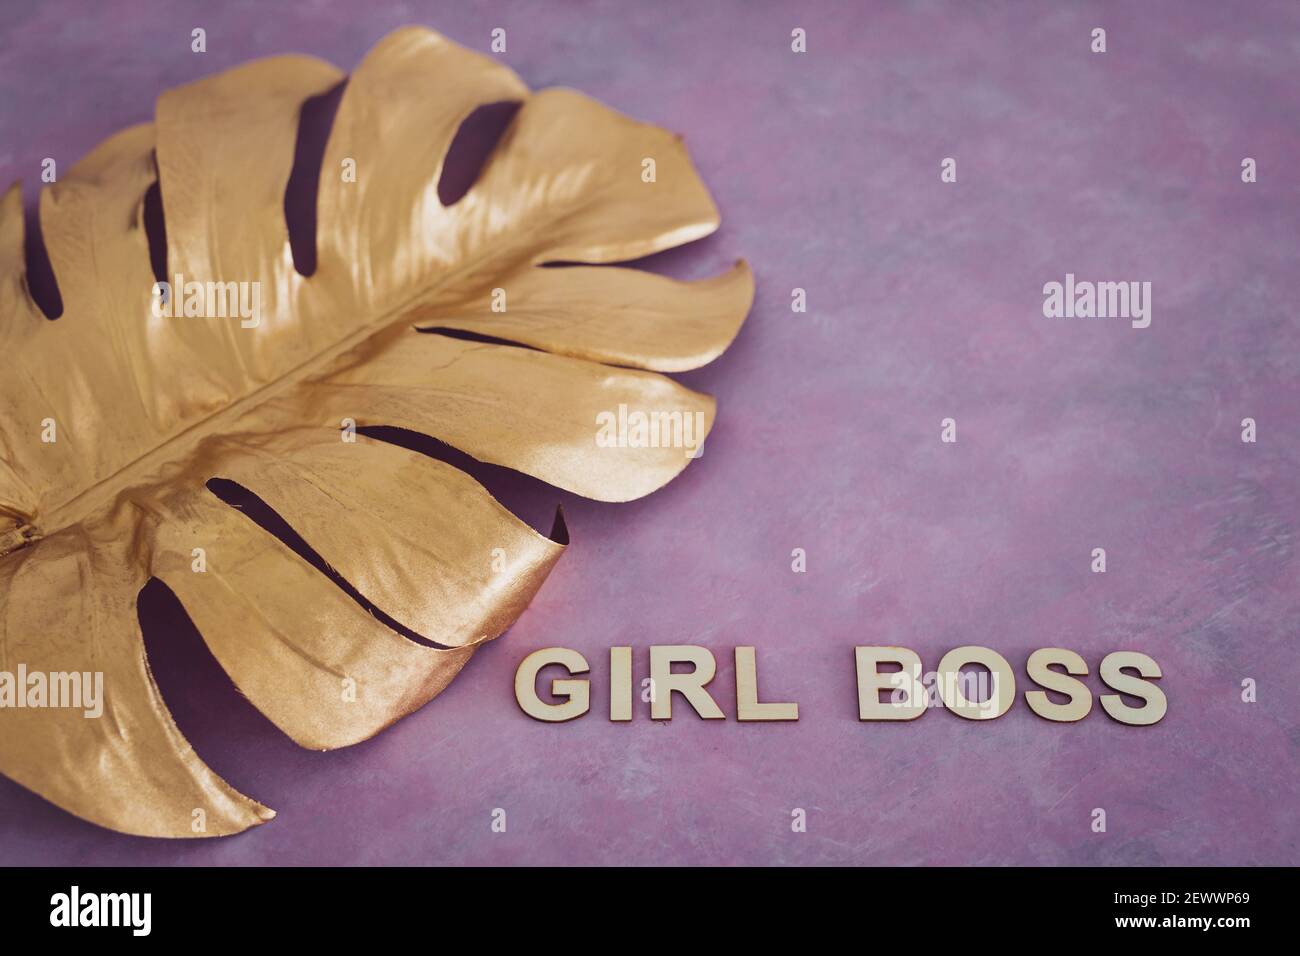 Pari opportunità Girl Boss testo in cima alla foglia d'oro simbolo di ricchezza e lusso su sfondo rosa Foto Stock